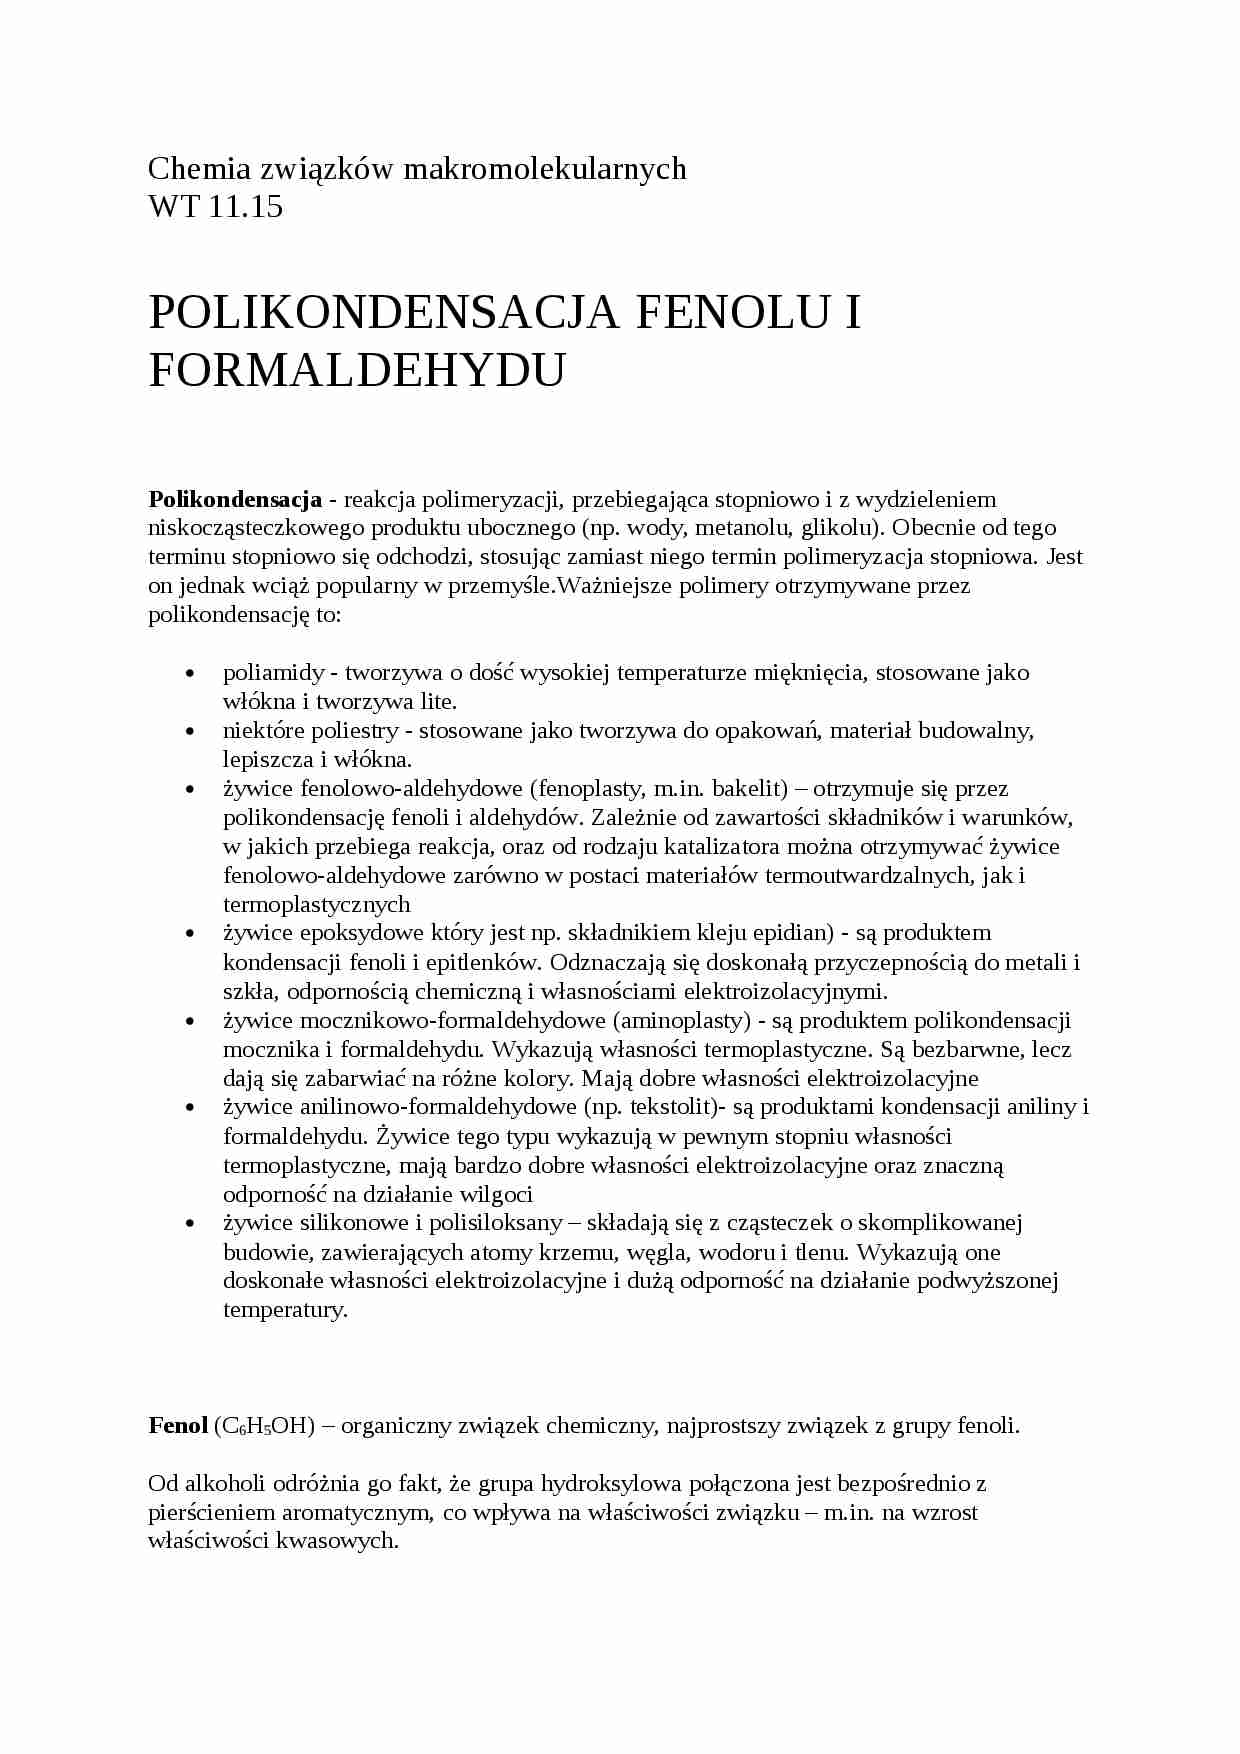 Polikondesacja fenolu i formaledehydu - omówienie  - strona 1